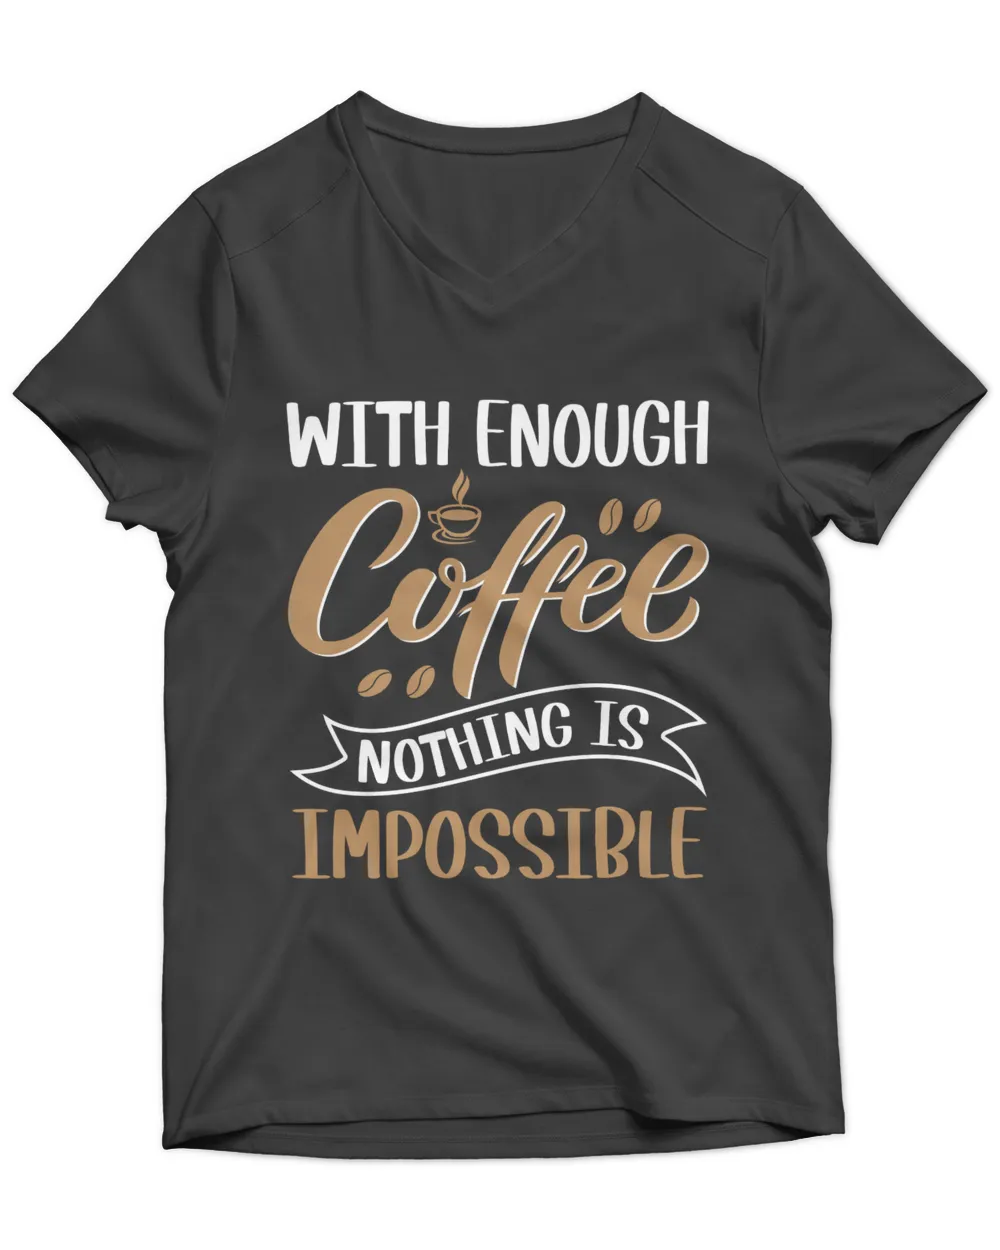 Coffee Shirt, Love Coffee T-Shirt, Coffee Life, Coffee and Books (11)